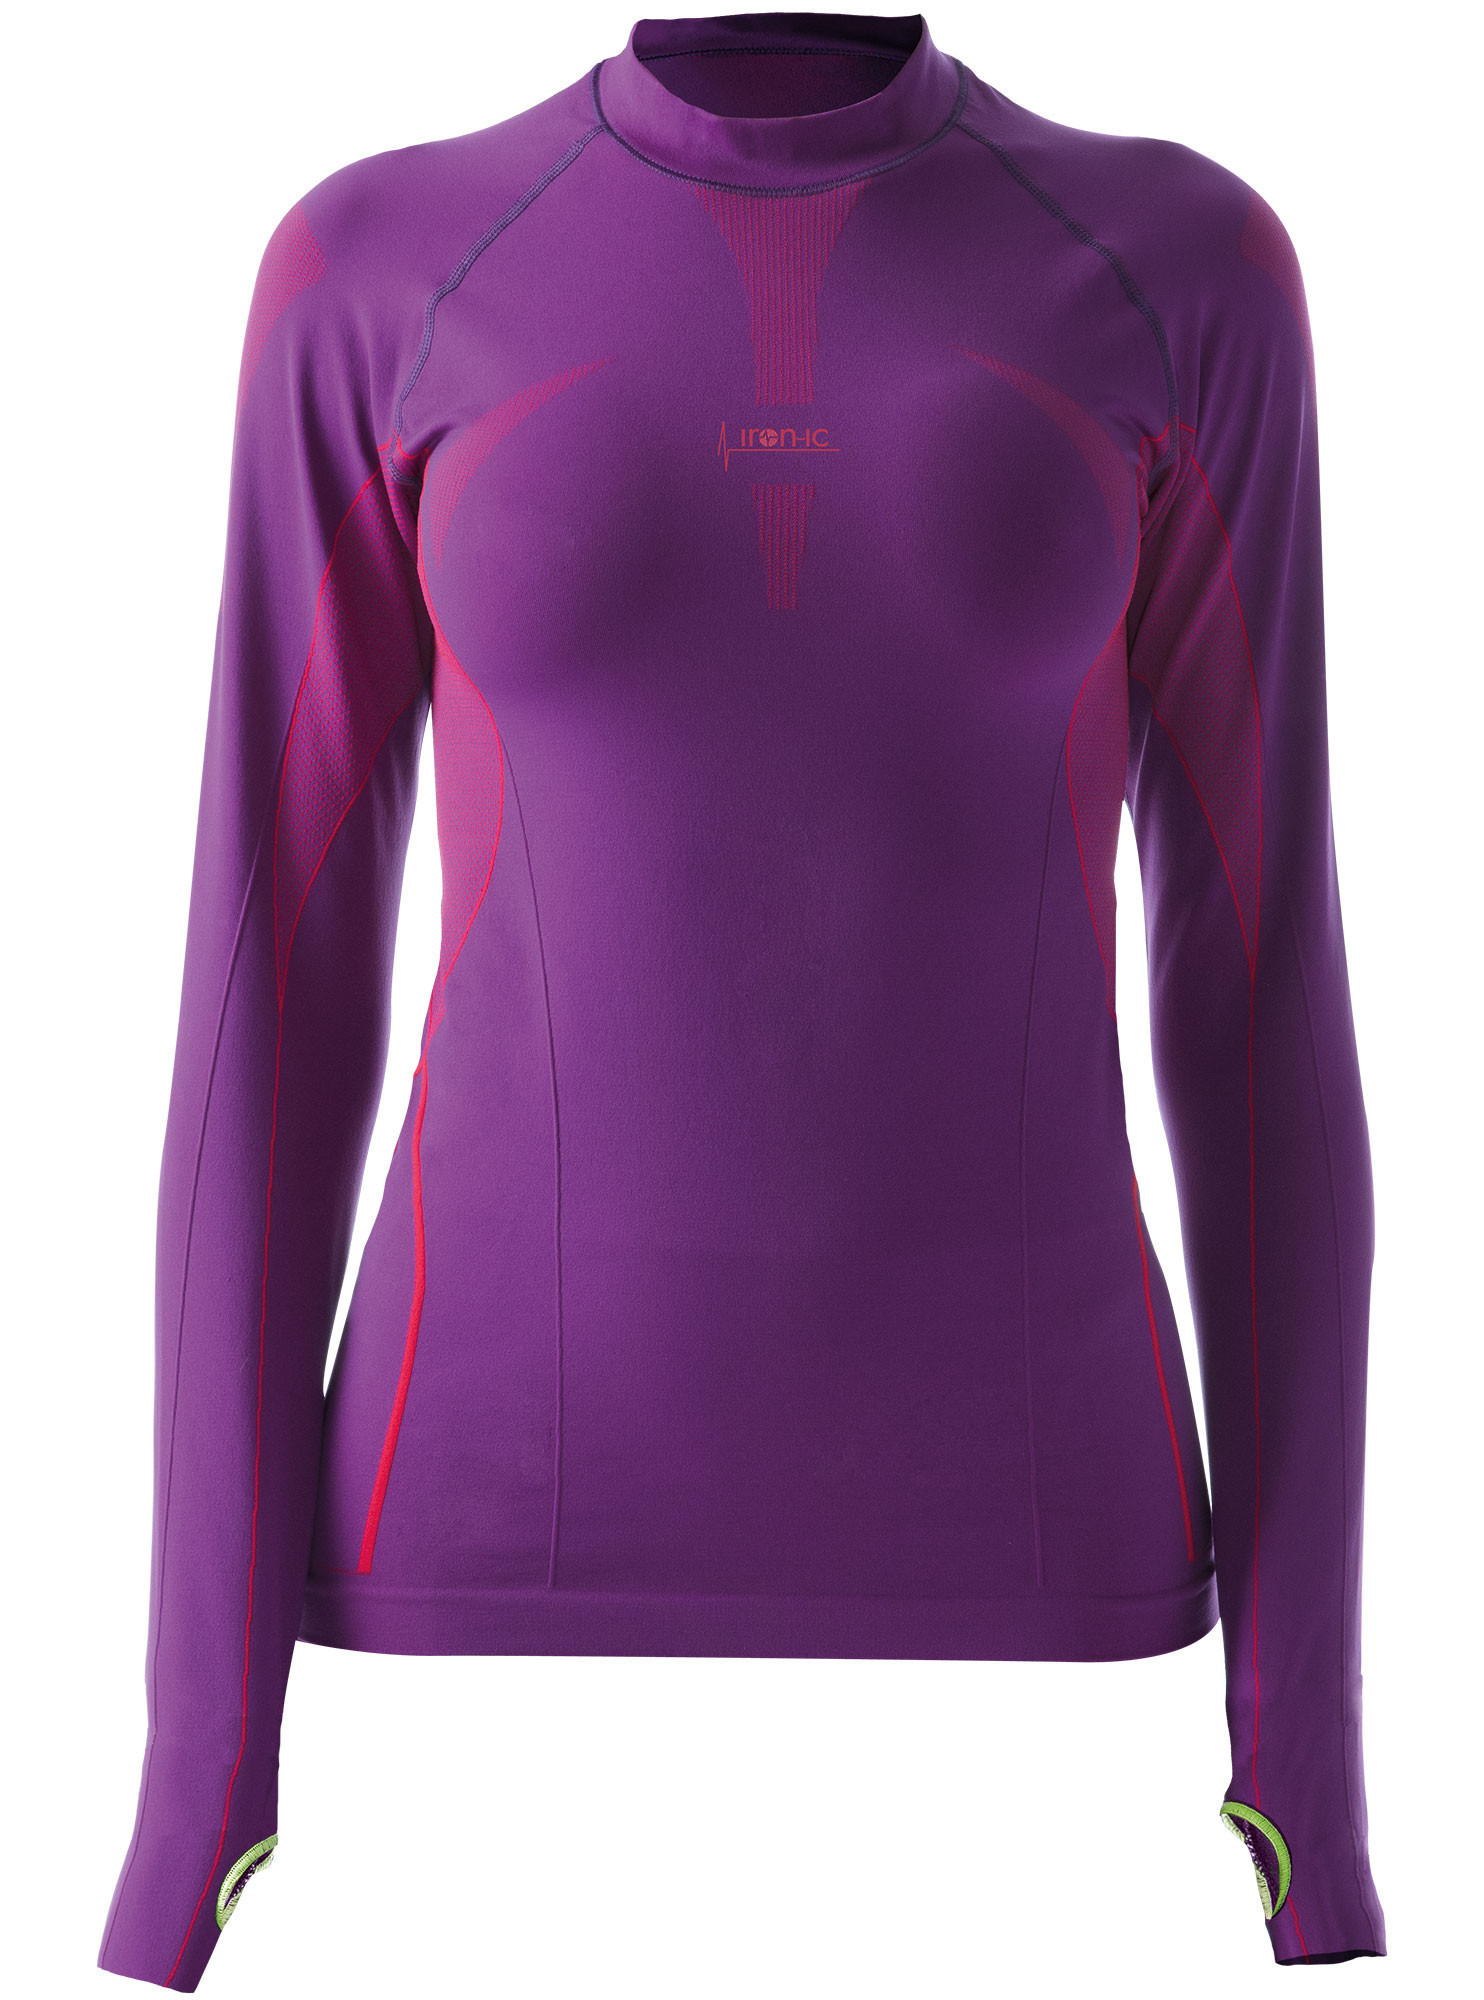 Dámské sportovní tričko s dlouhým rukávem IRON-IC - fialová Barva: Violet NY, Velikost: XS/S